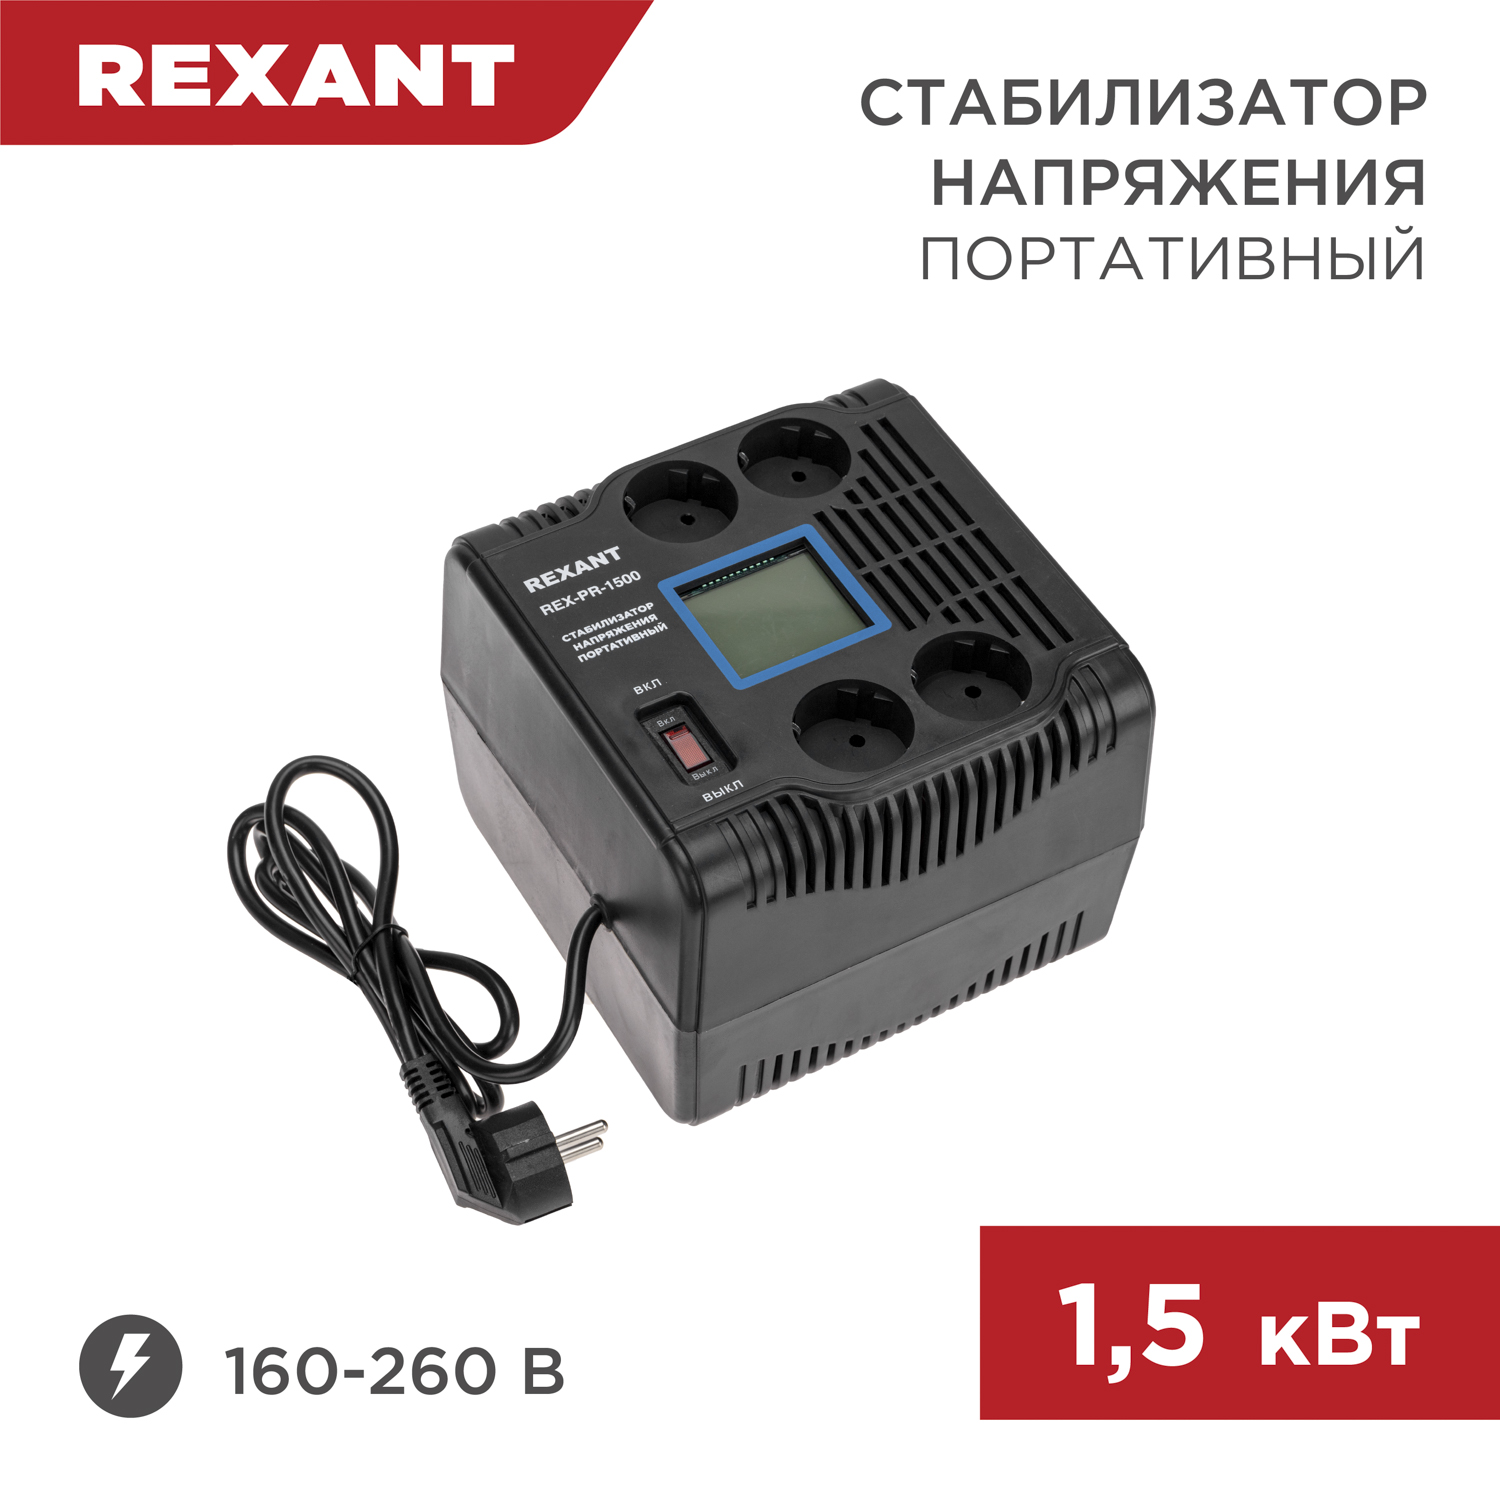 Стабилизатор напряжения портативный REXANT REX-PR-1500 11-5031 автомобильный портативный компрессор качок